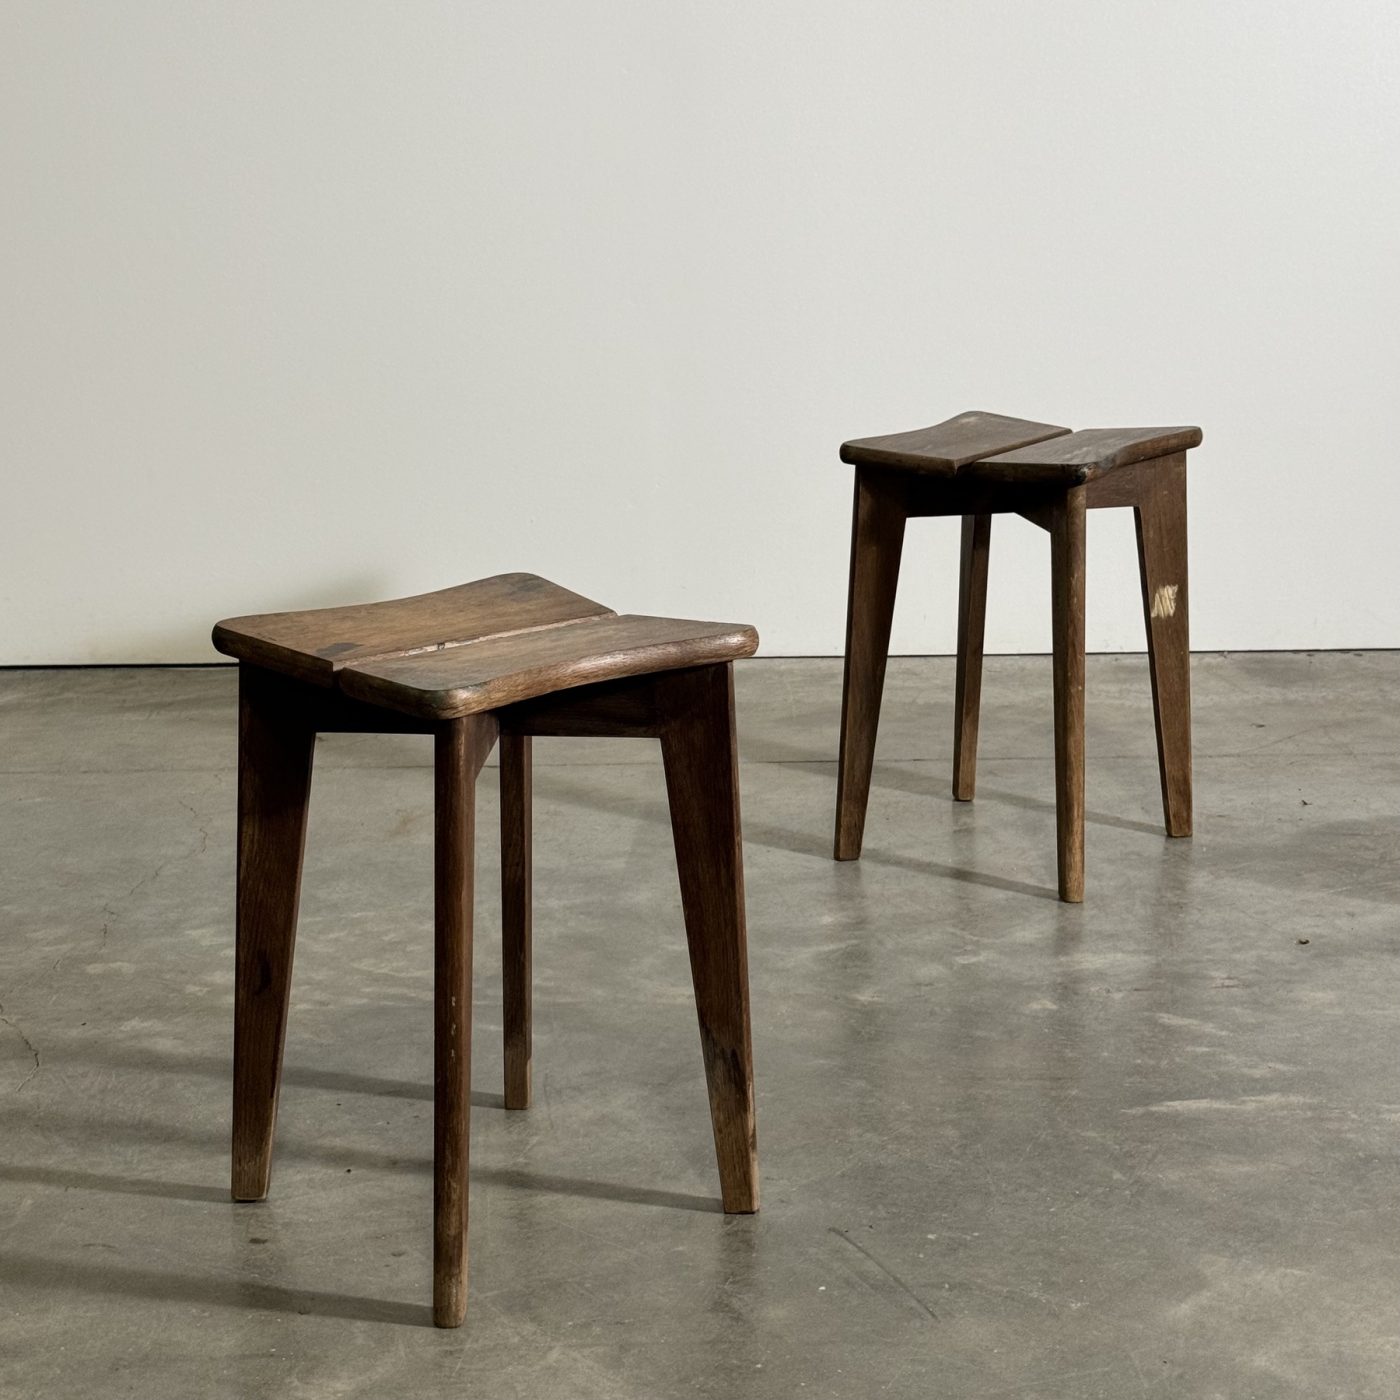 objet-vagabond-gascoin-stools0001